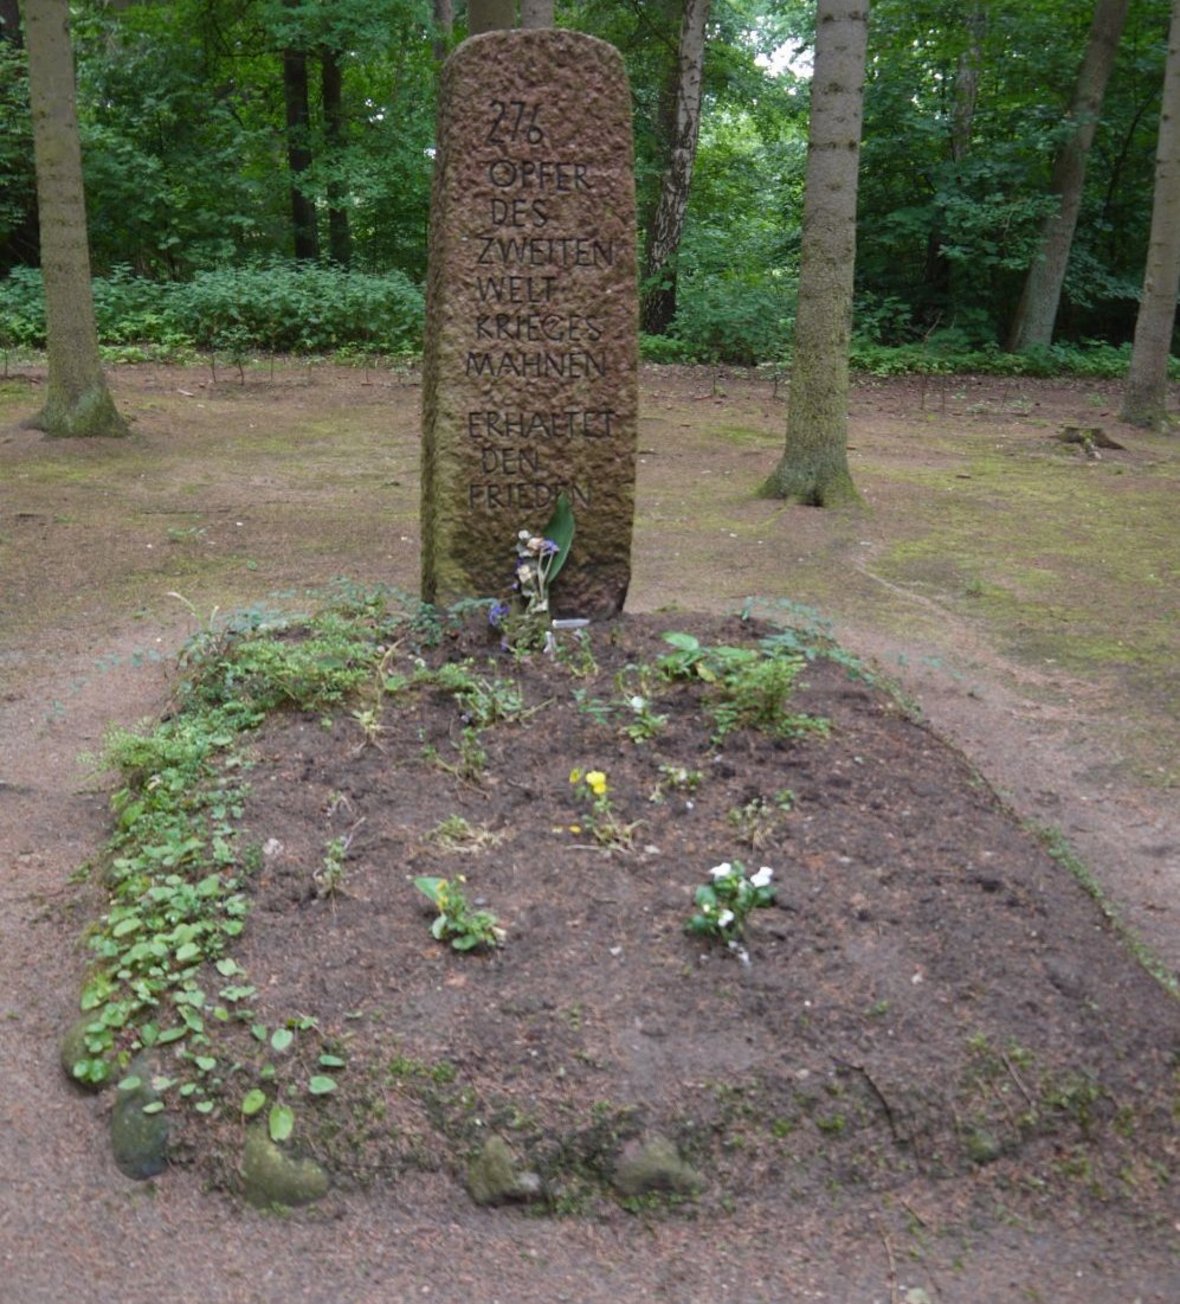 Lagerfriedhof Losten - Granitsteinstele mit Aufschrift "276 Opfer des Zweiten Weltkriegs mahnen - erhaltet den Frieden"